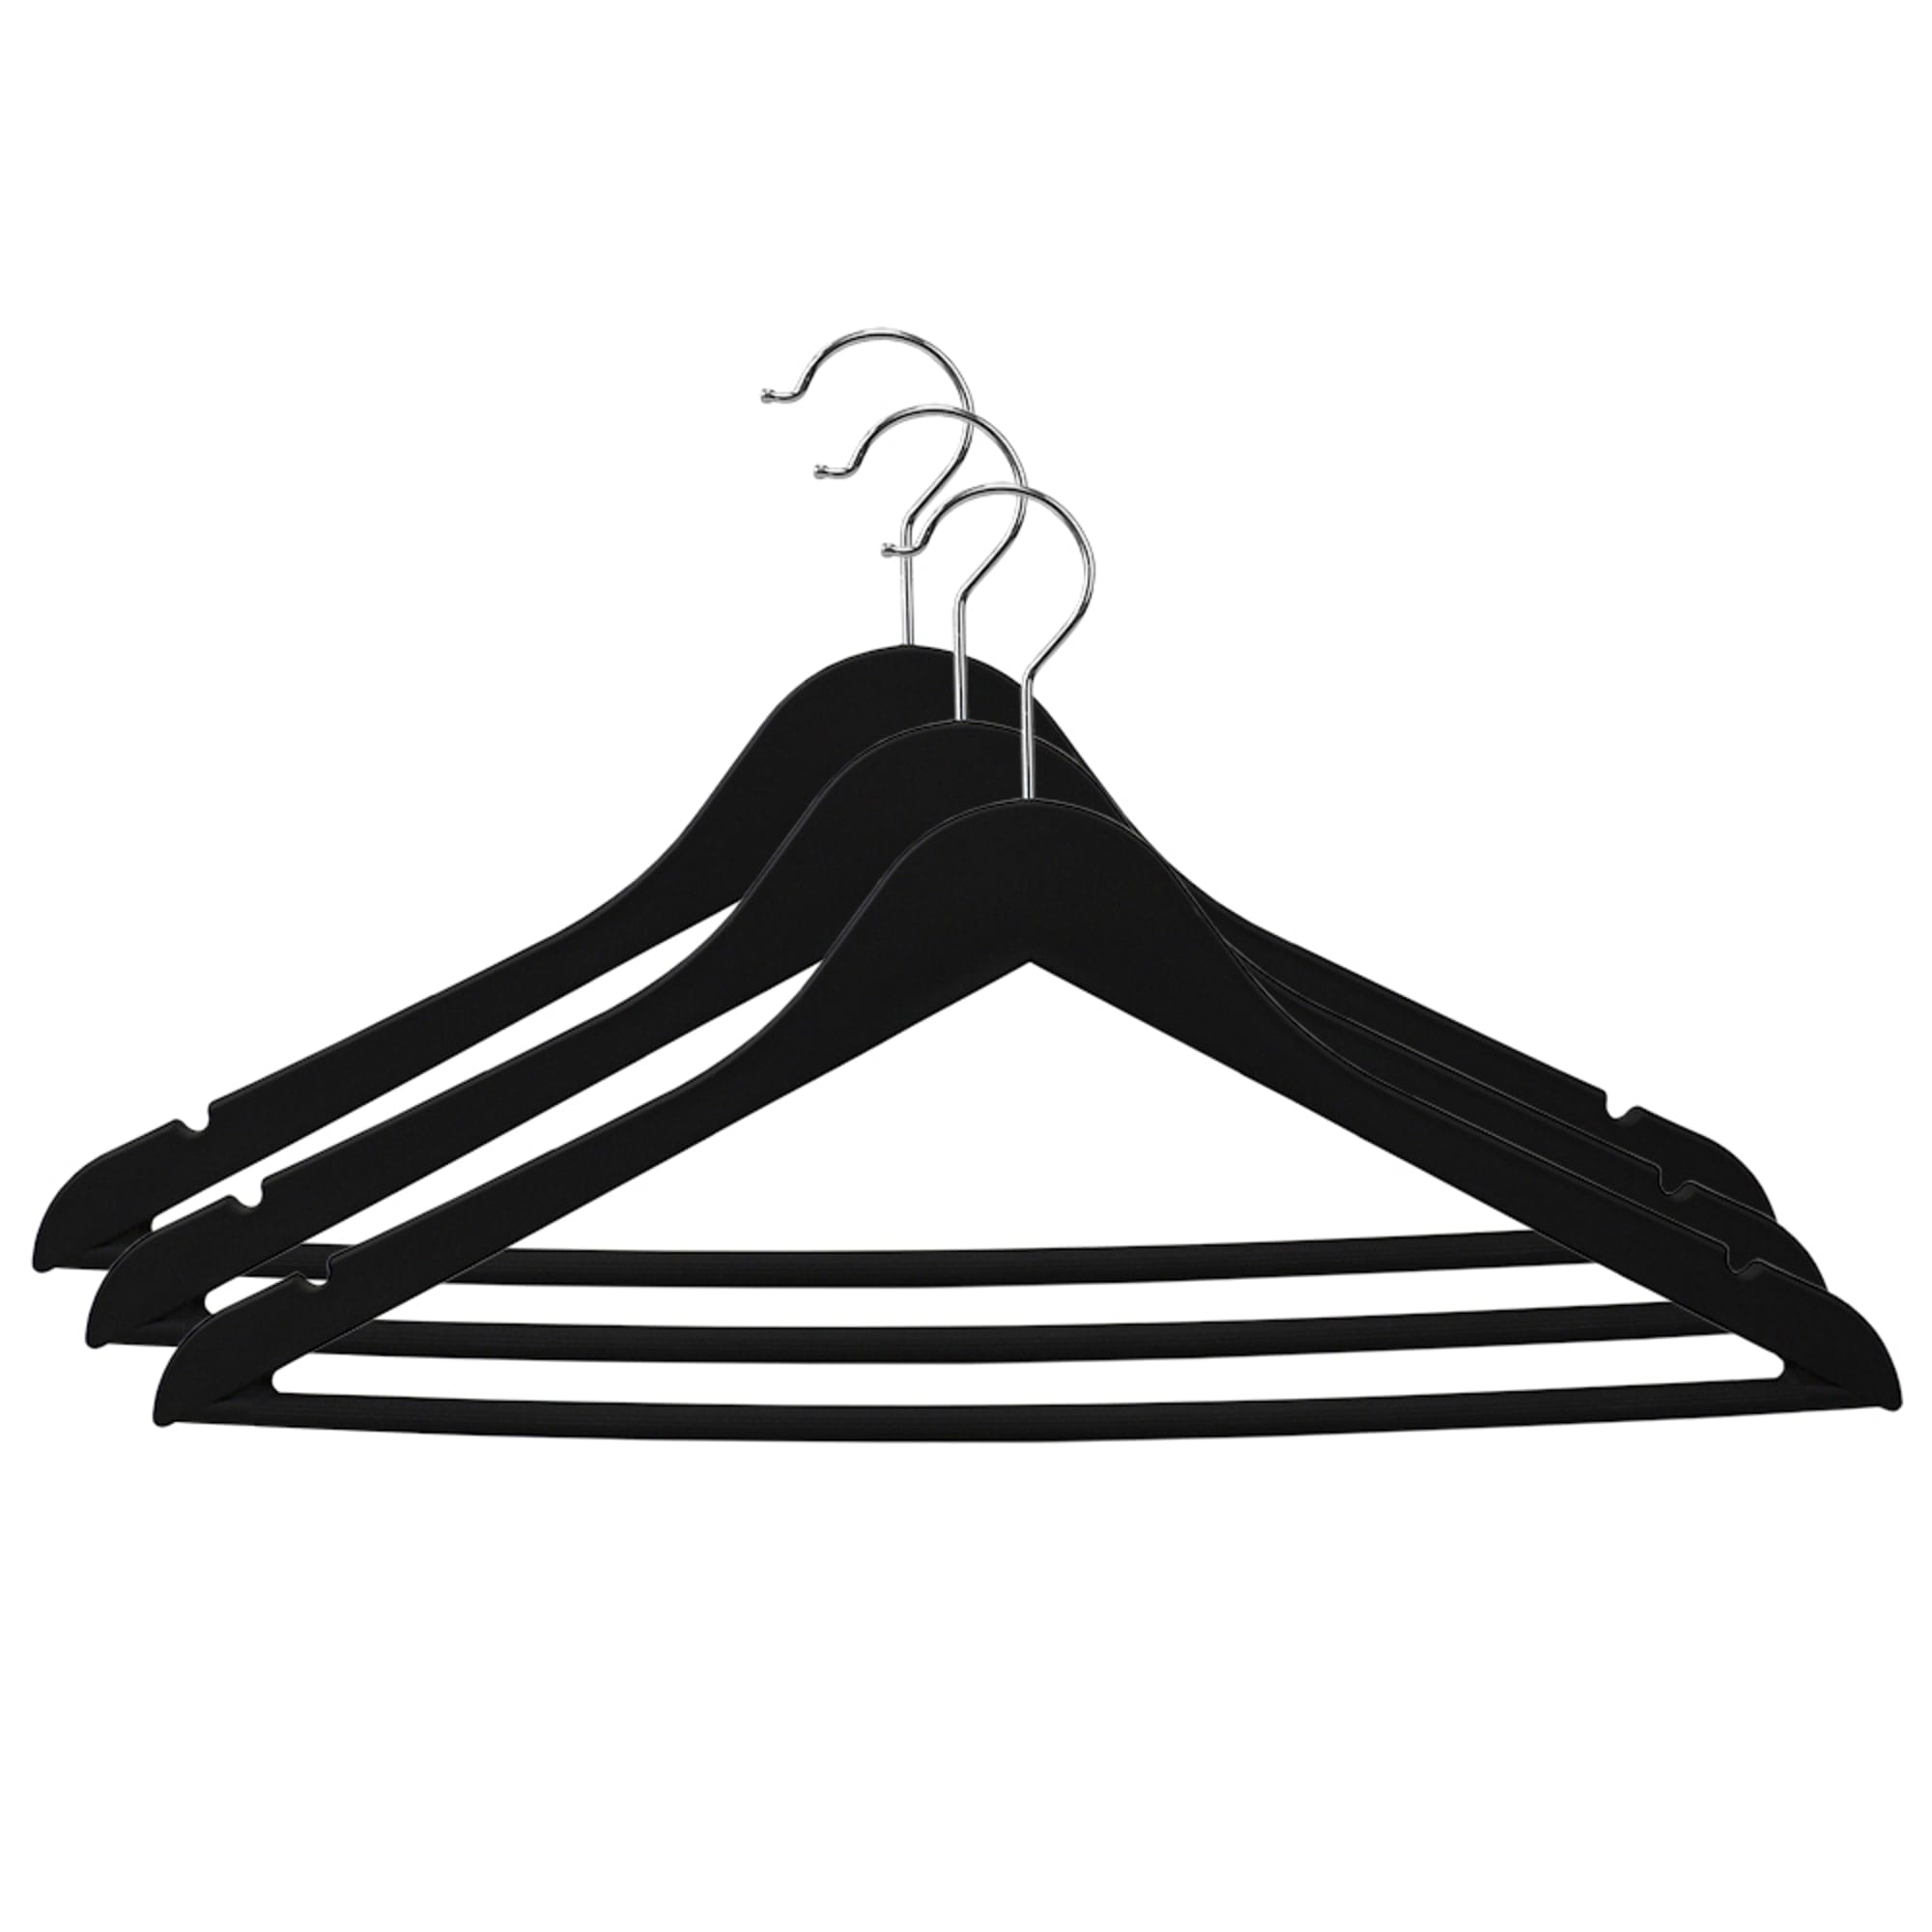 Home Basics 10-Pack Plastic Non-slip Grip Clothing Hanger (Black